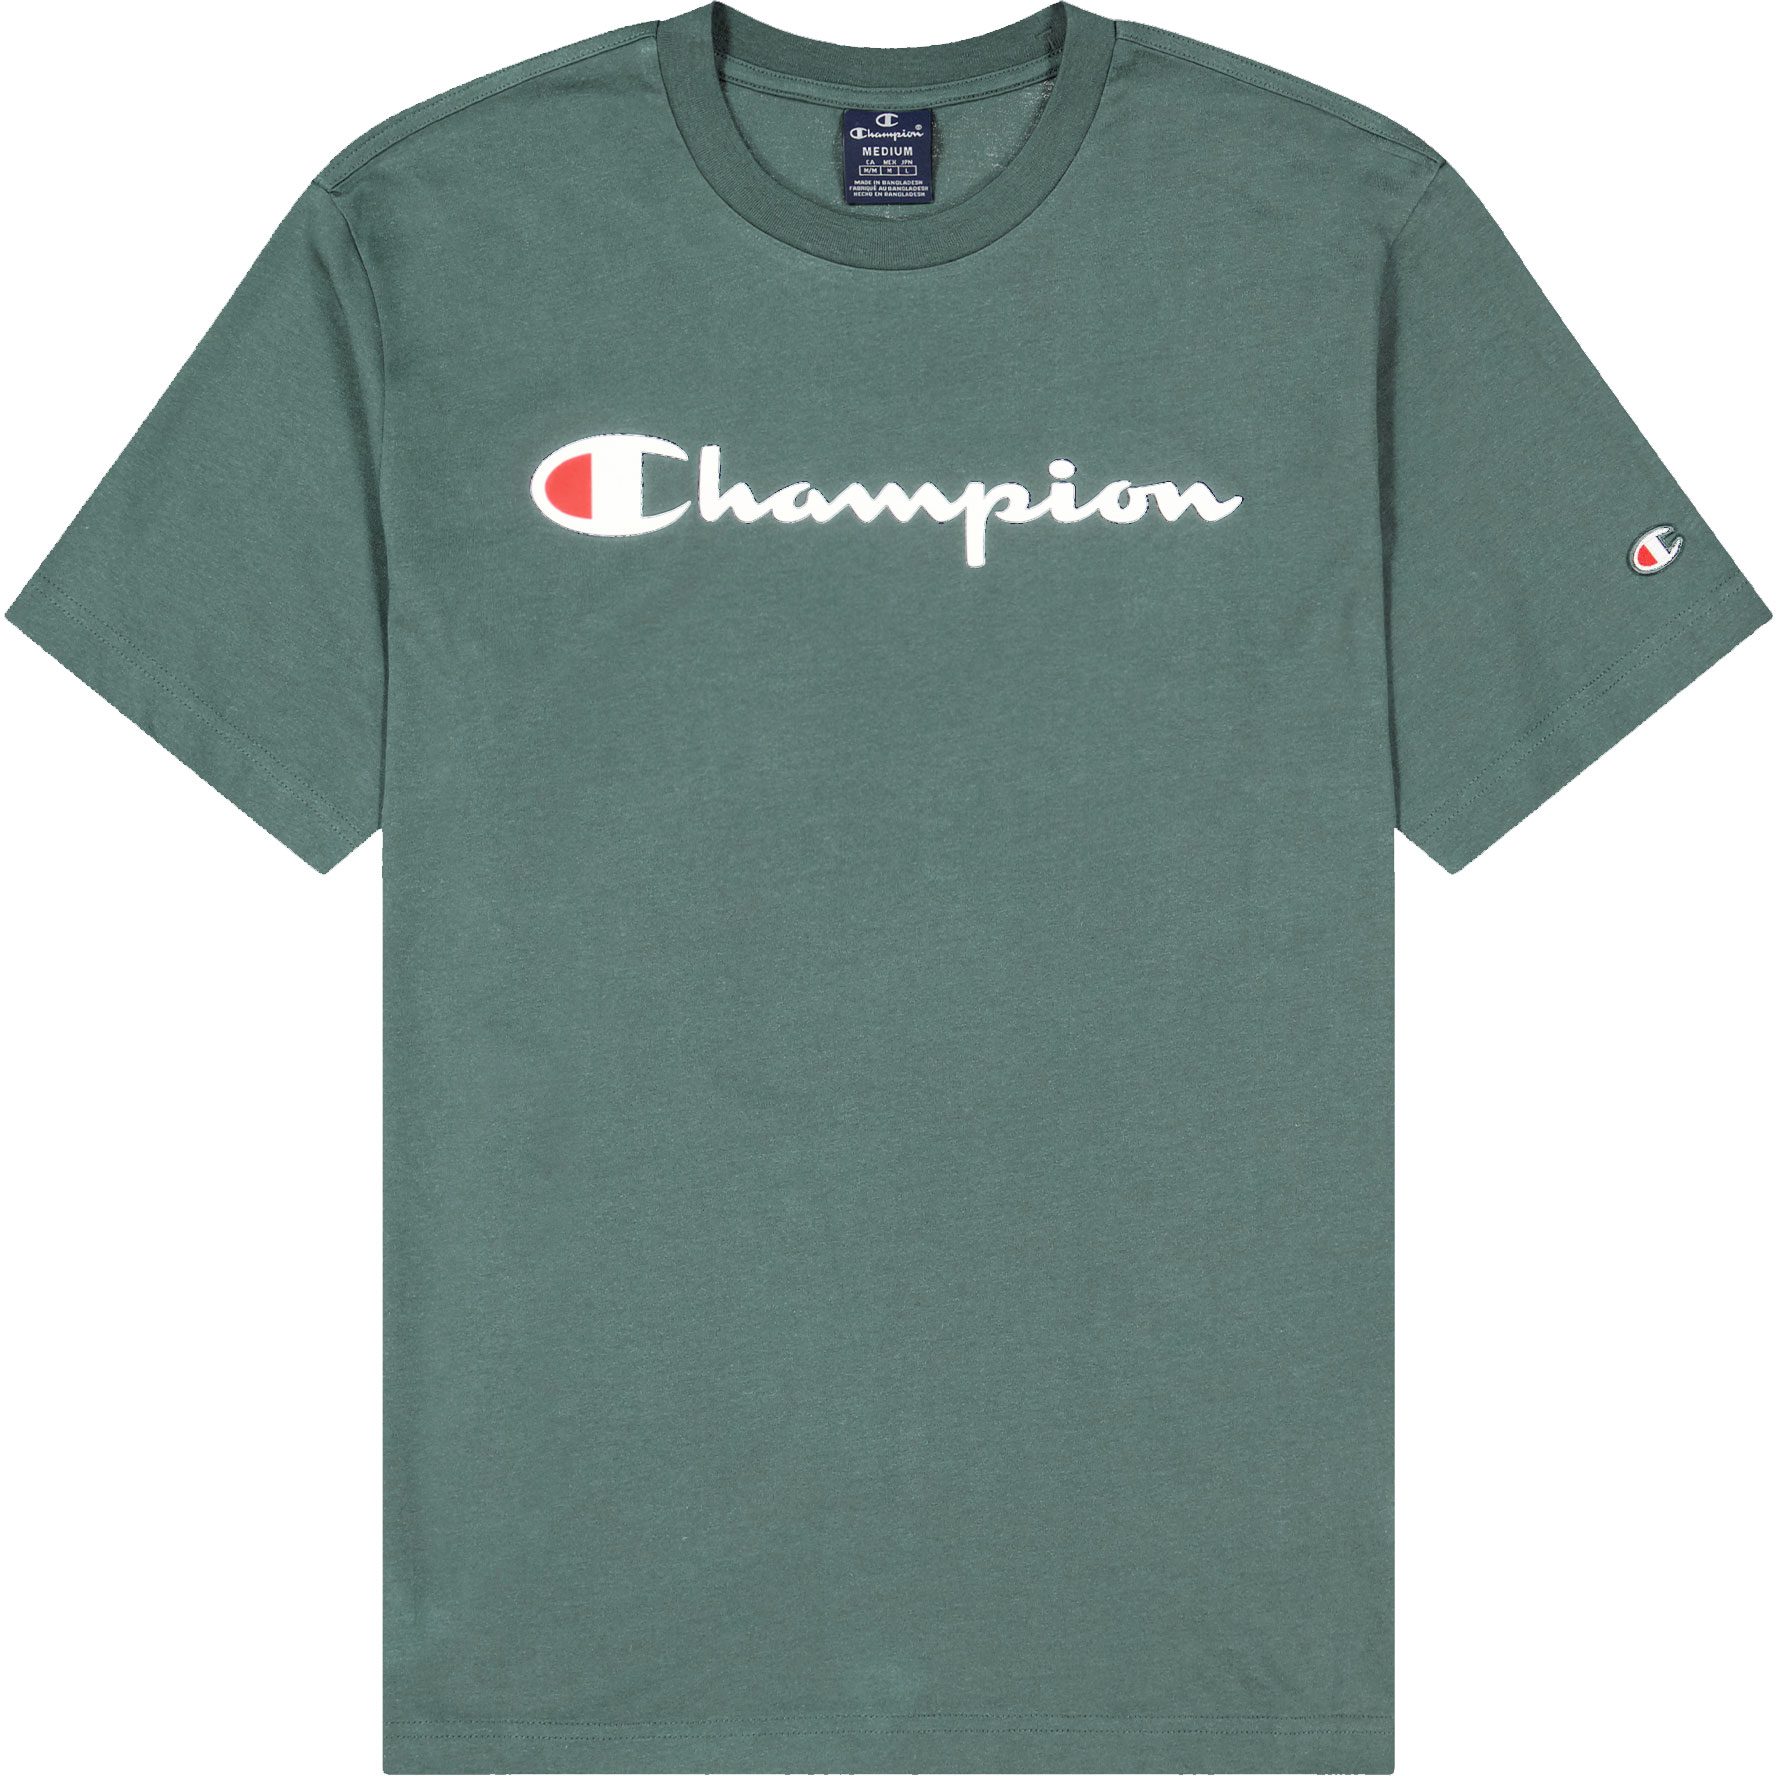 Champion Shop T-Shirt kaufen green balsamo Sport Herren - Bittl im Crewneck